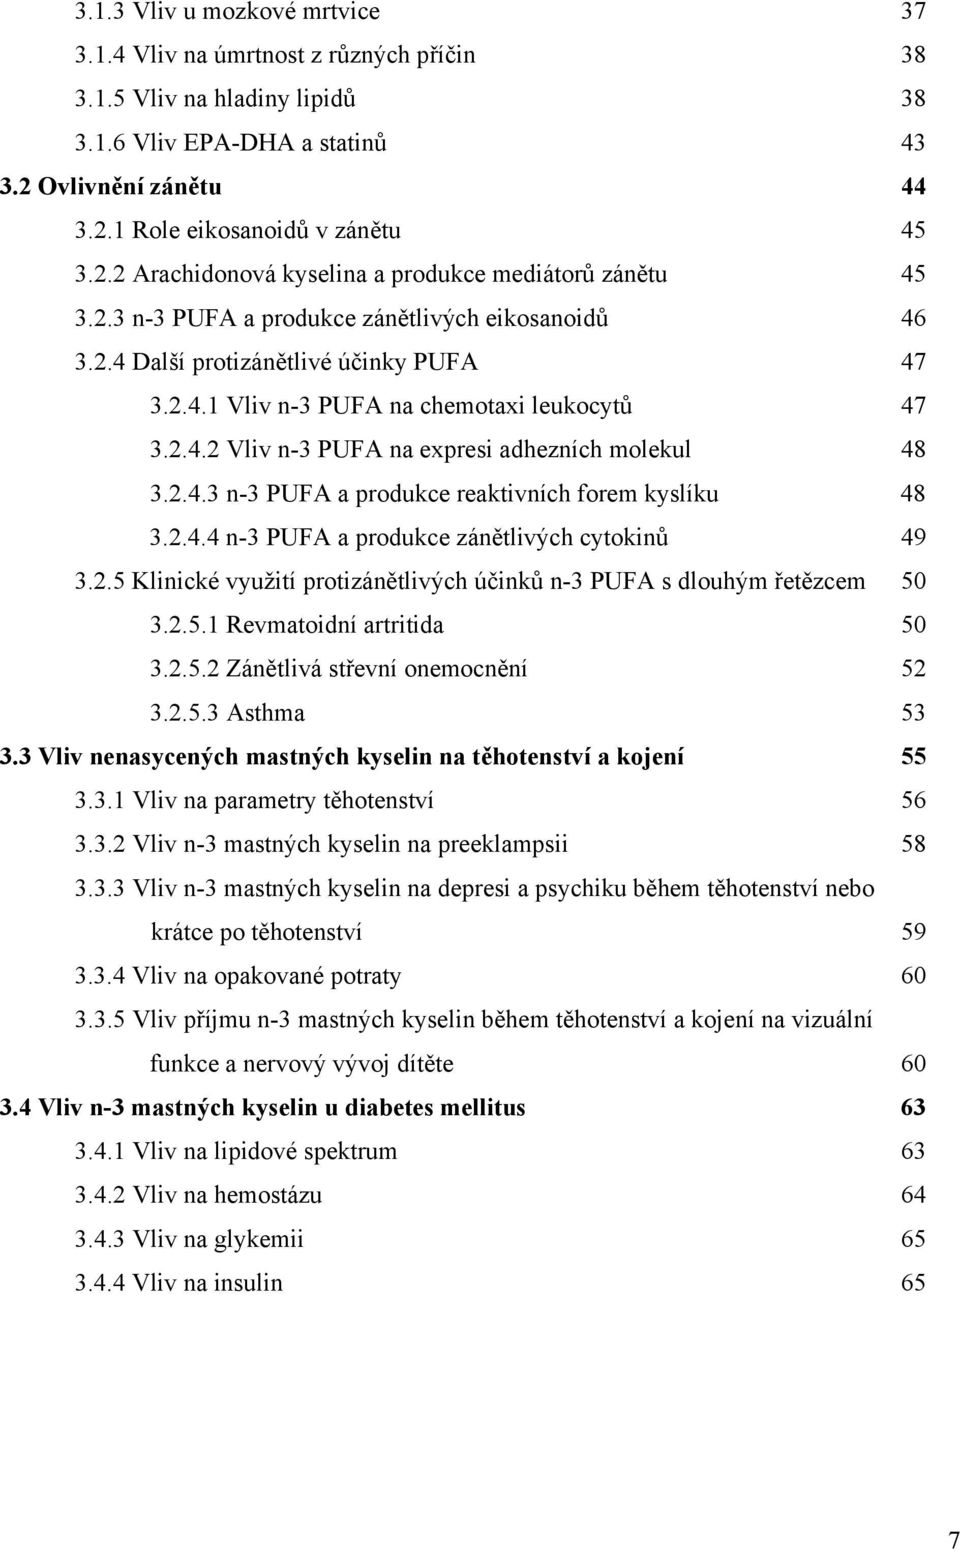 2.4.2 Vliv n-3 PUFA na expresi adhezních molekul 48 3.2.4.3 n-3 PUFA a produkce reaktivních forem kyslíku 48 3.2.4.4 n-3 PUFA a produkce zánětlivých cytokinů 49 3.2.5 Klinické využití protizánětlivých účinků n-3 PUFA s dlouhým řetězcem 50 3.